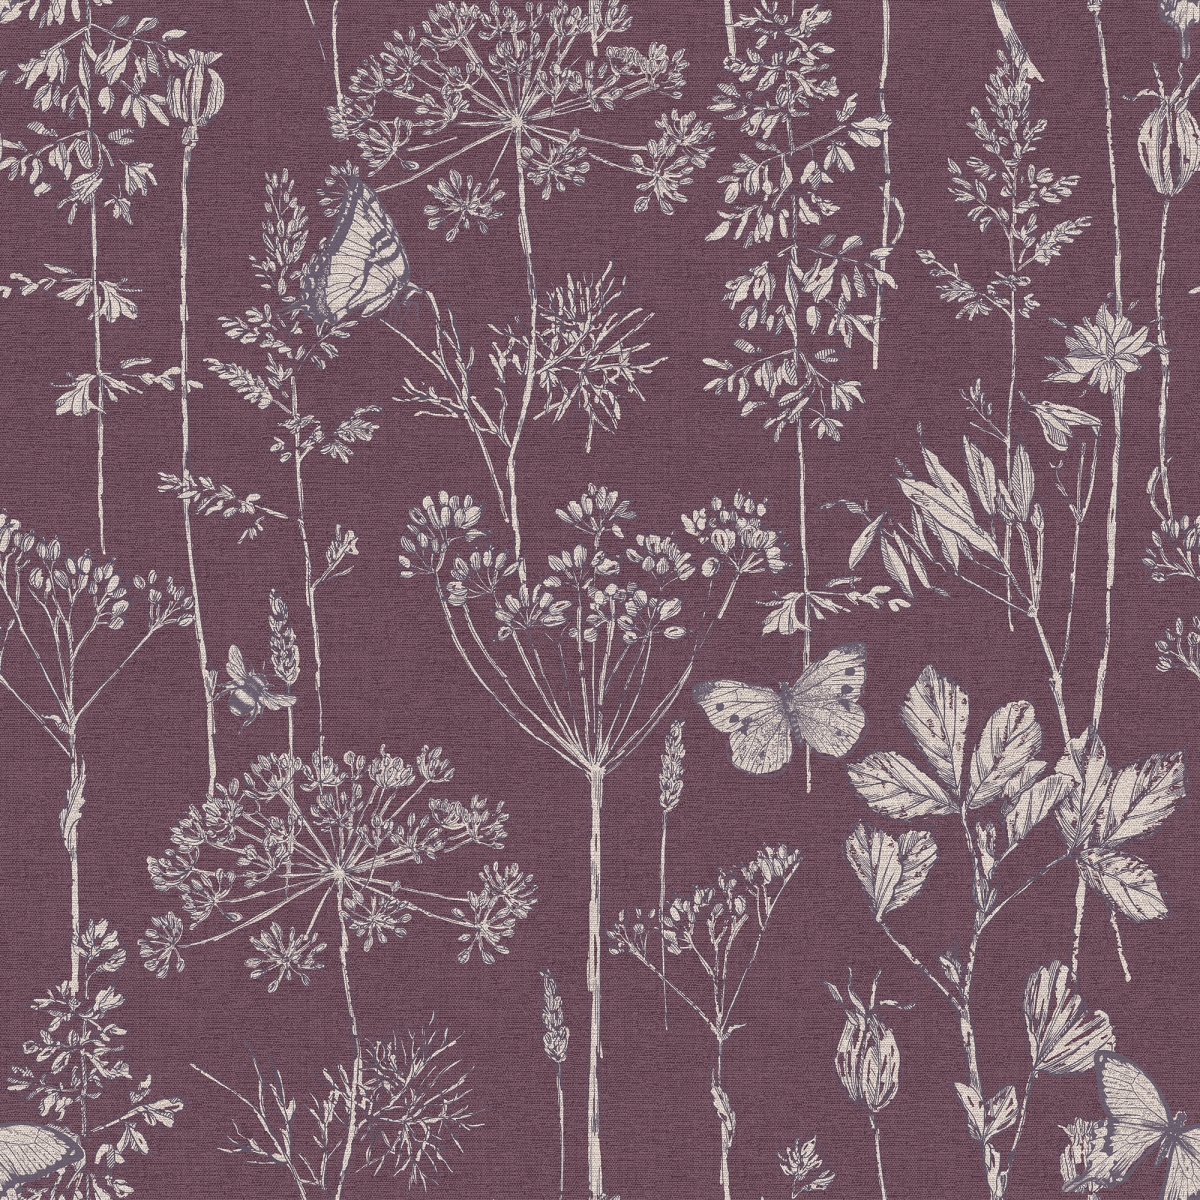 904107 Meadow Floral Non-woven Wallpaper, Plum